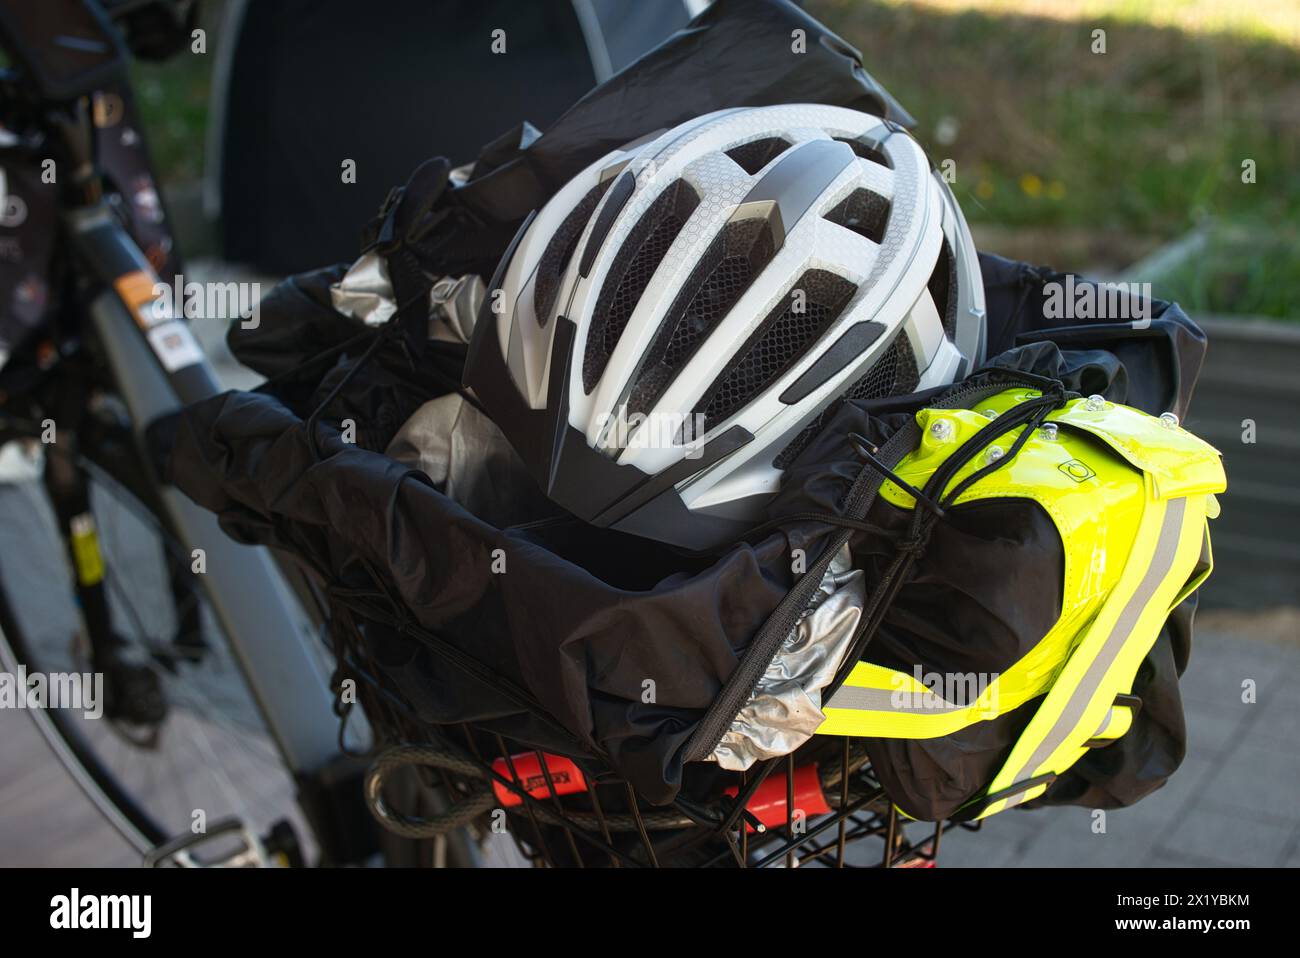 Vue arrière d'un E-bike mettant en évidence le porte-bagages pour vélo, qui contient un casque de vélo, un gilet réfléchissant, un cadenas de vélo, une housse de pluie et une bâche. En th Banque D'Images